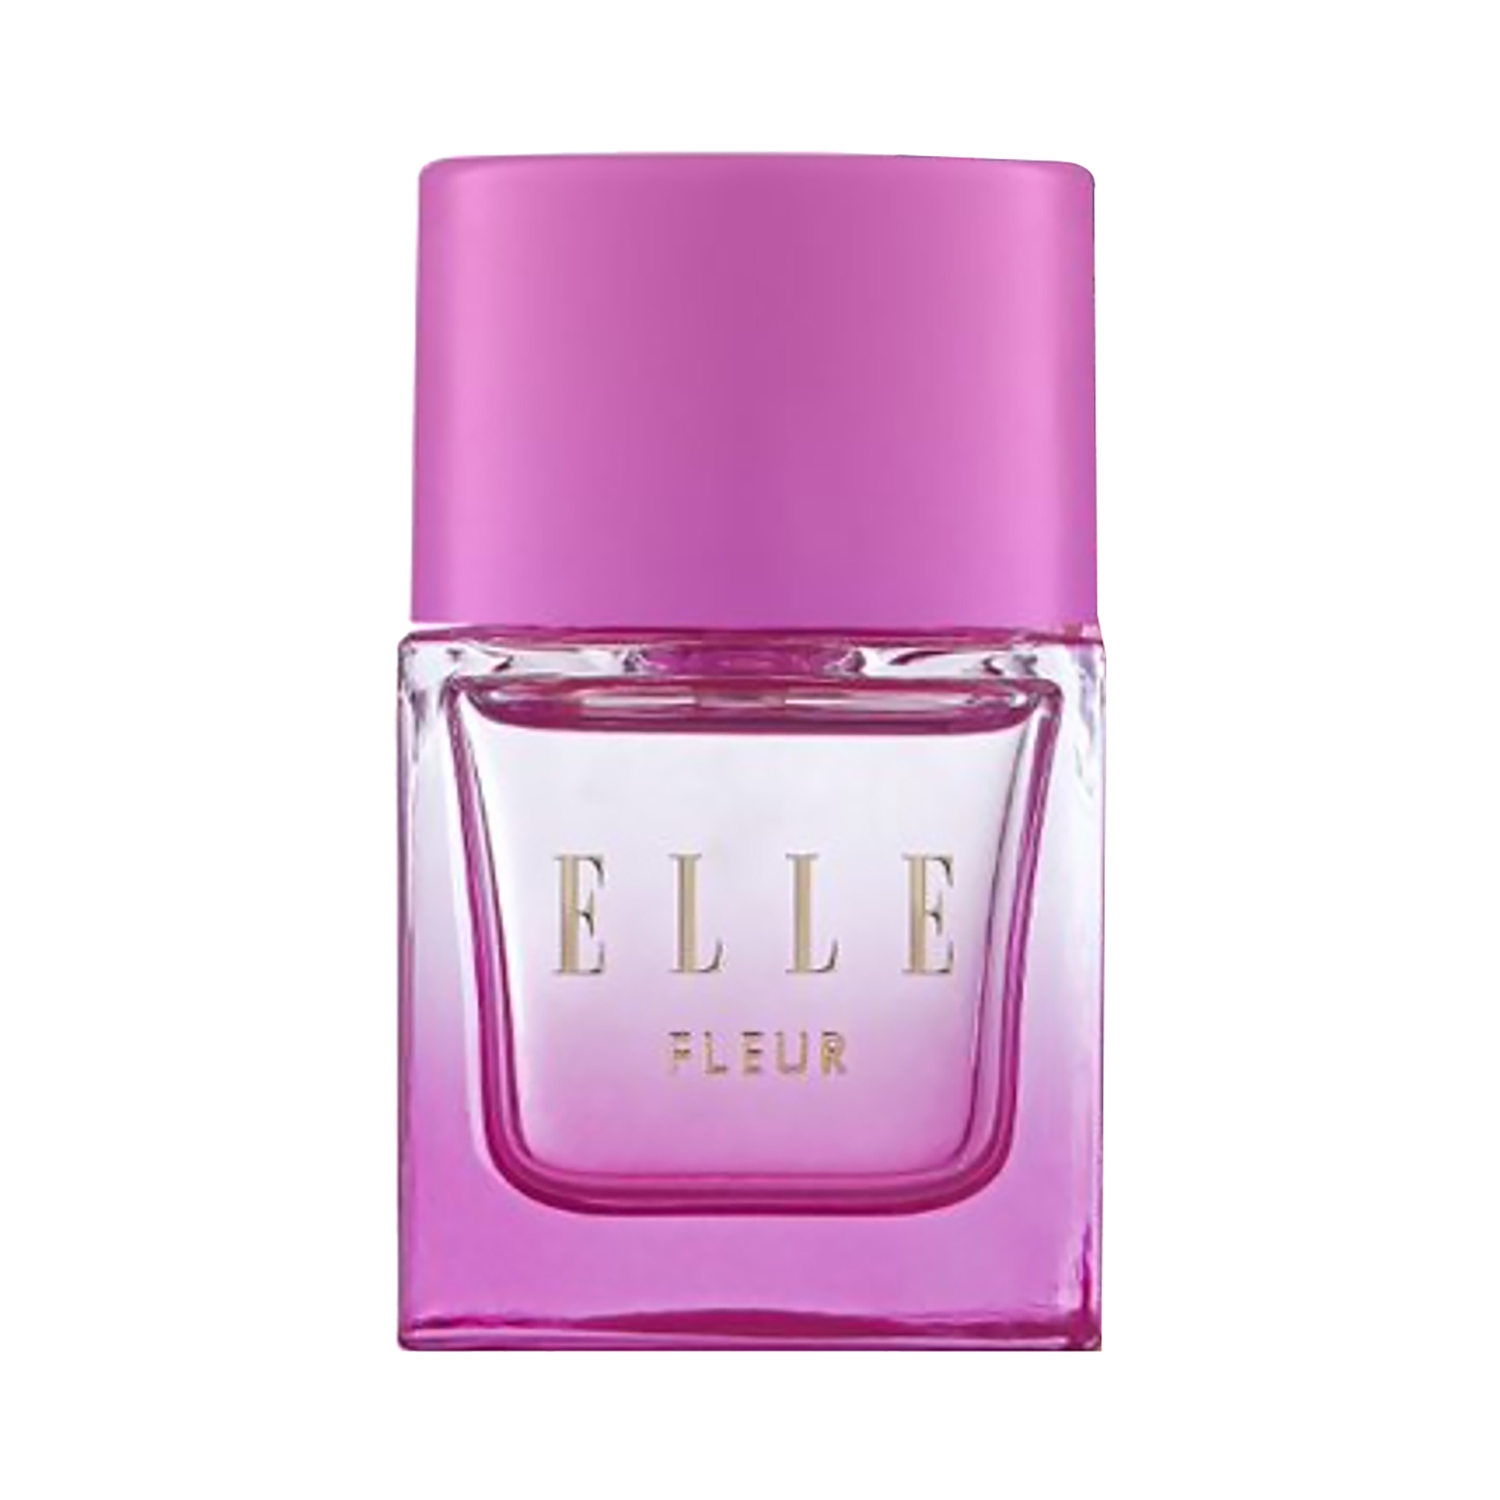 ELLE | ELLE Fleur Eau De Parfum (30ml)